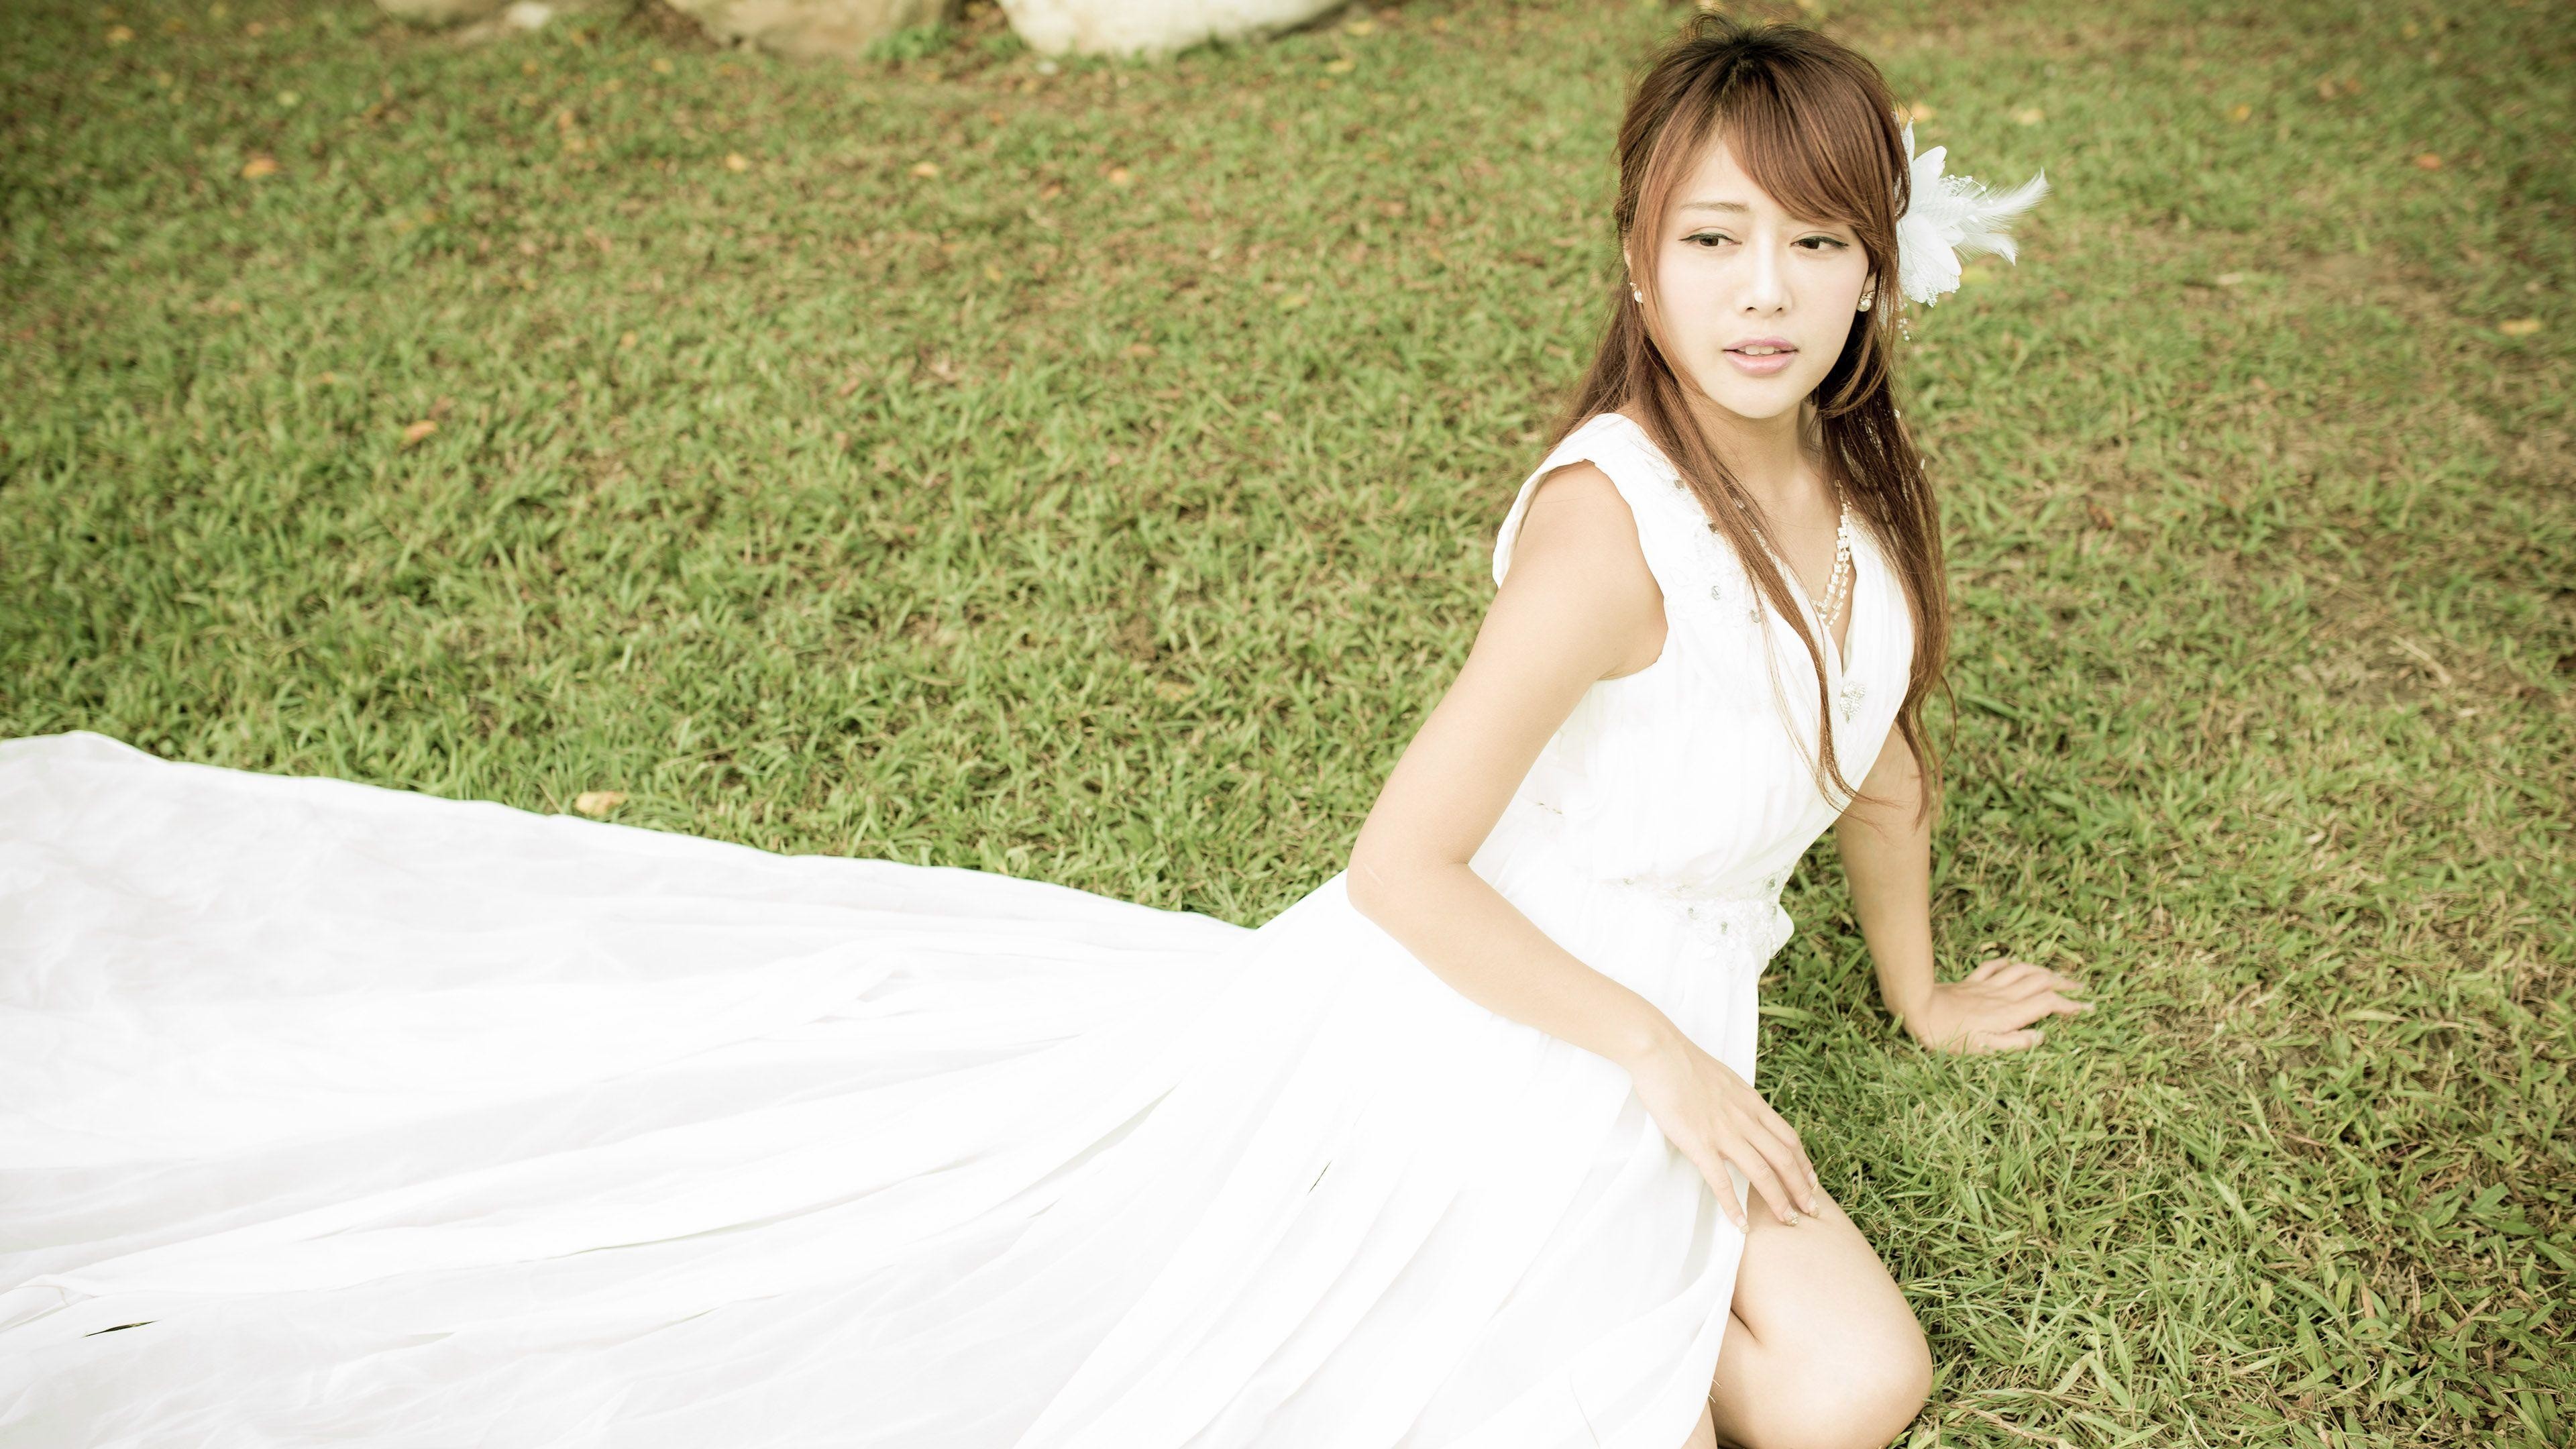 3840x2160 Xiao Xi in a wedding dress